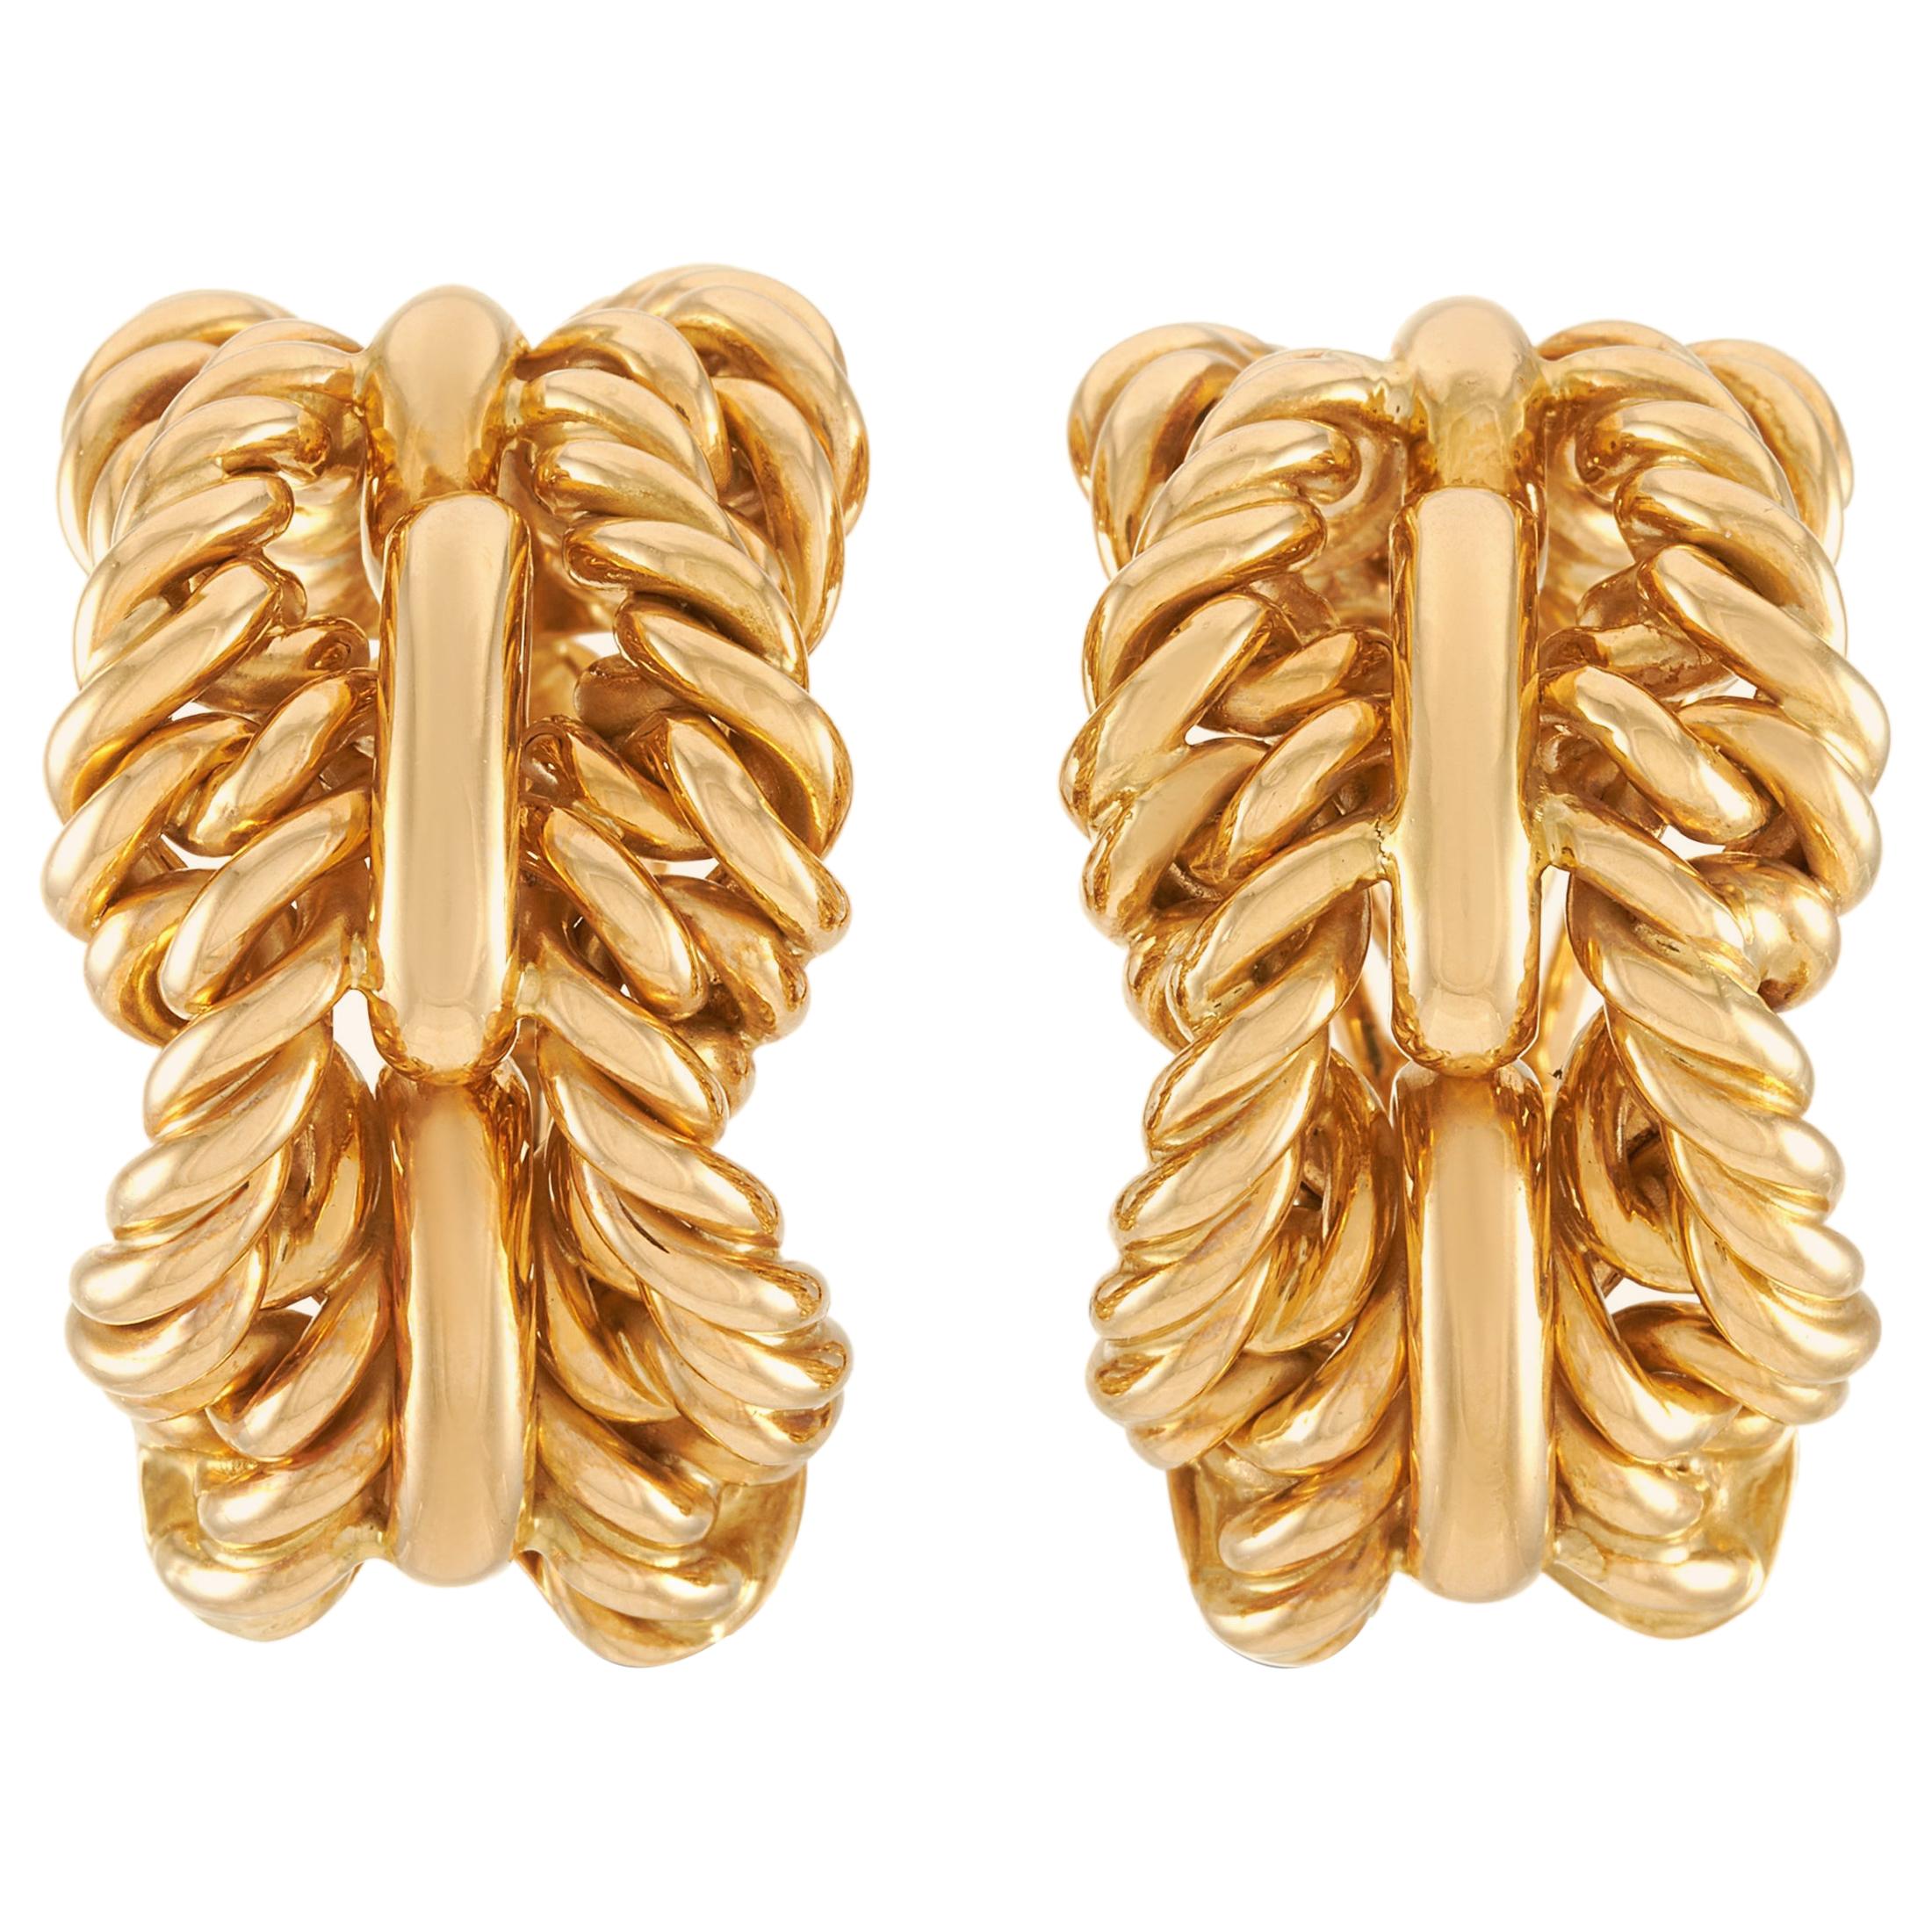 Tiffany & Co. 18 Karat Yellow Gold Earrings